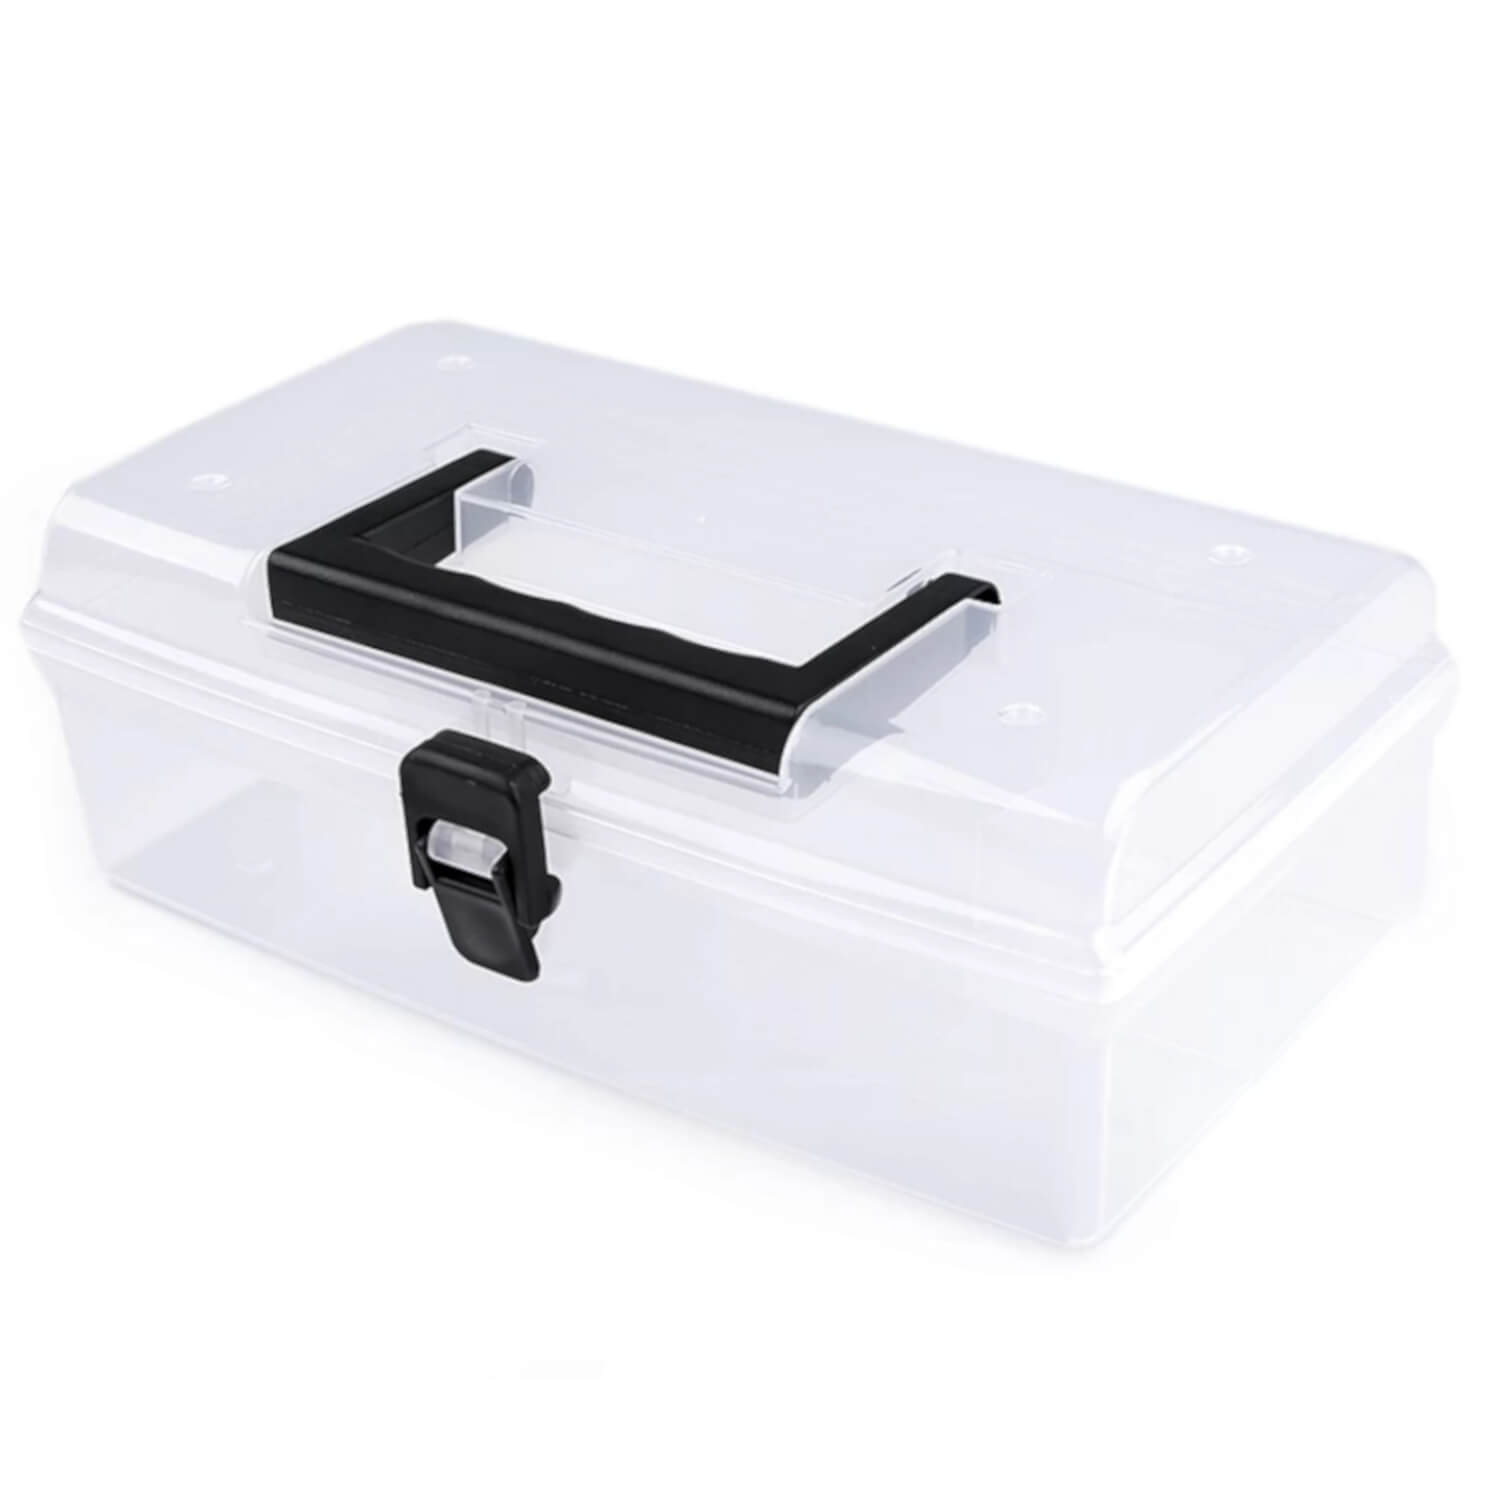 Sortierbox - Sortierkoffer aus flexiblen Kunststoff 13,5 x 24,5 x 8,5 cm (1)